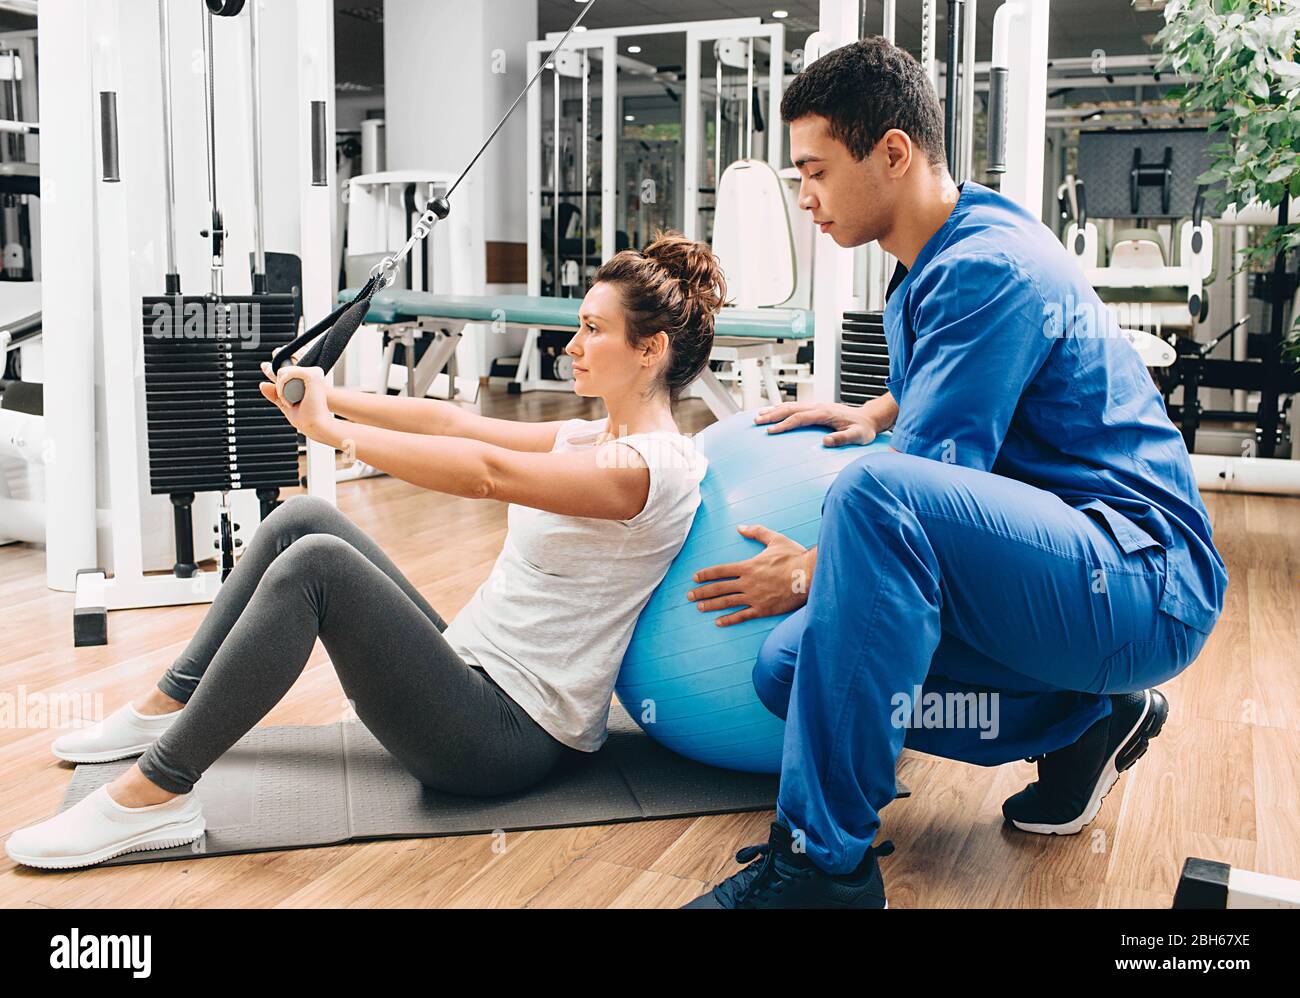 kinésiologue aide une femme à faire des exercices pour renforcer ses muscles du dos. traitement de la douleur du dos avec kinésithérapie. Banque D'Images